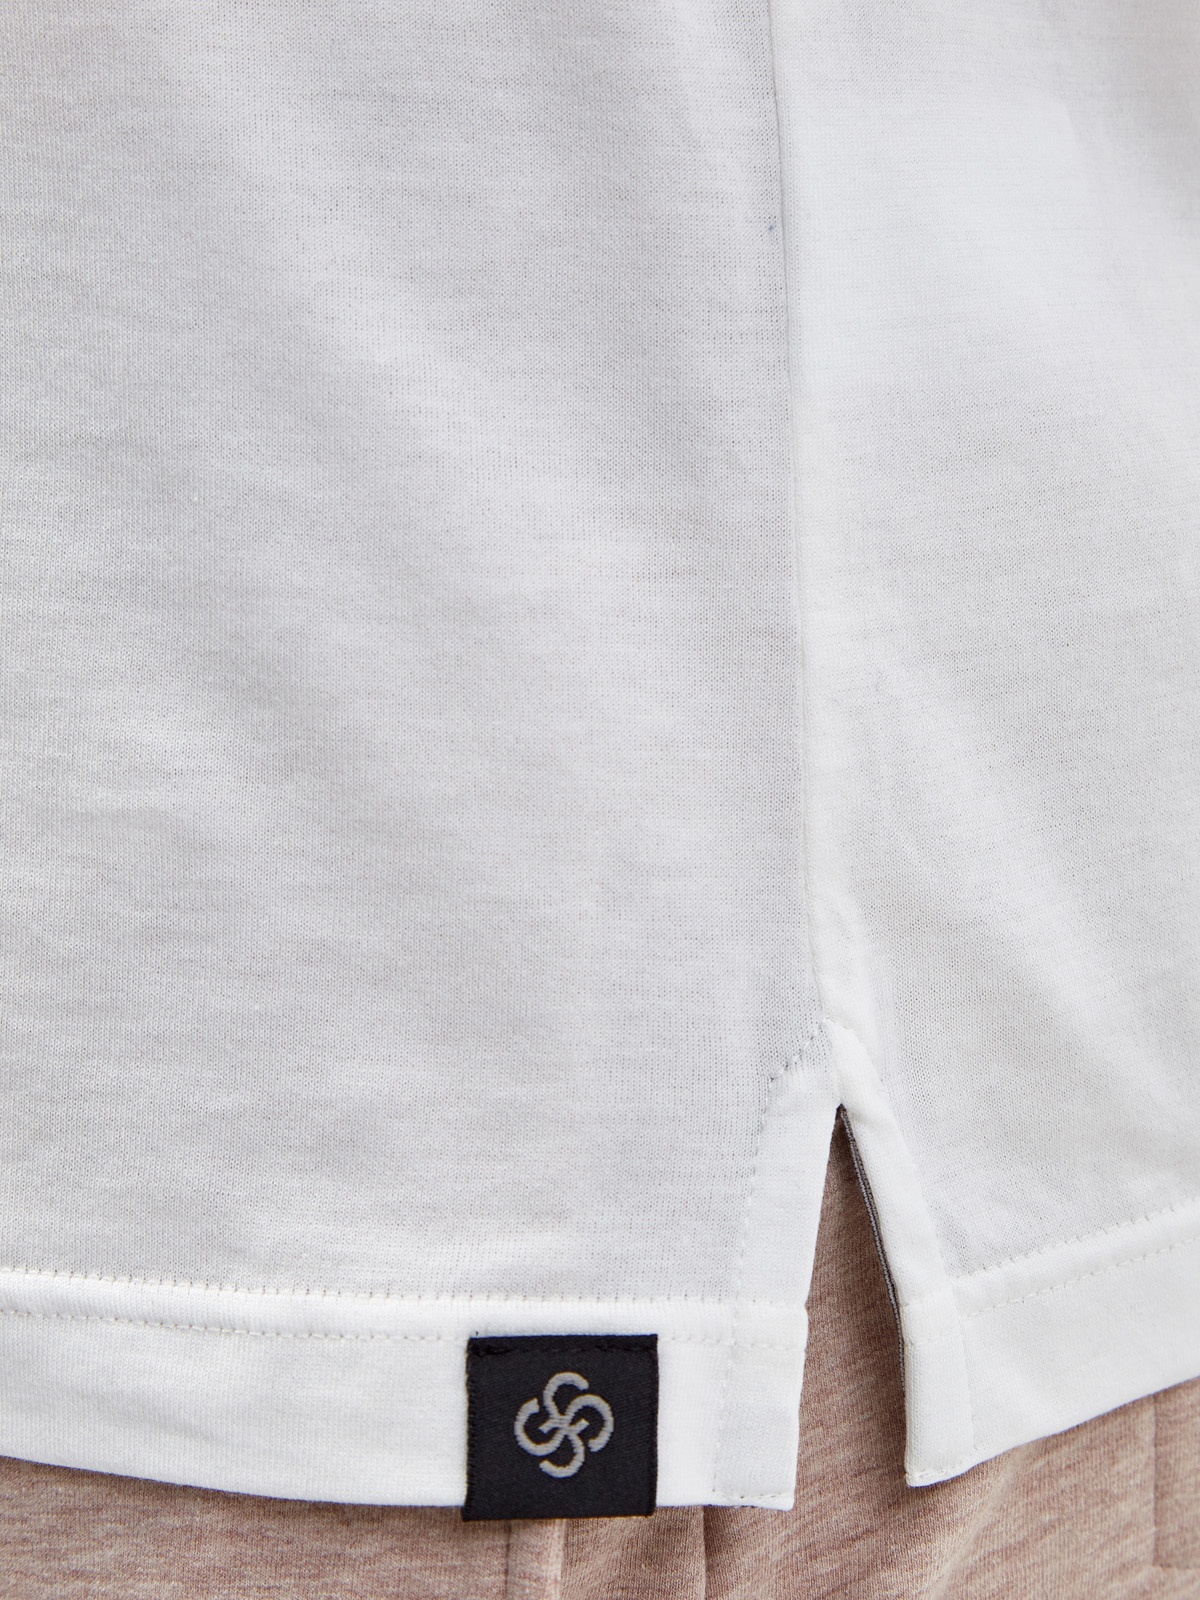 Базовая белая футболка из гладкого хлопка джерси GRAN SASSO, цвет белый, размер 54;56;58;48 - фото 5